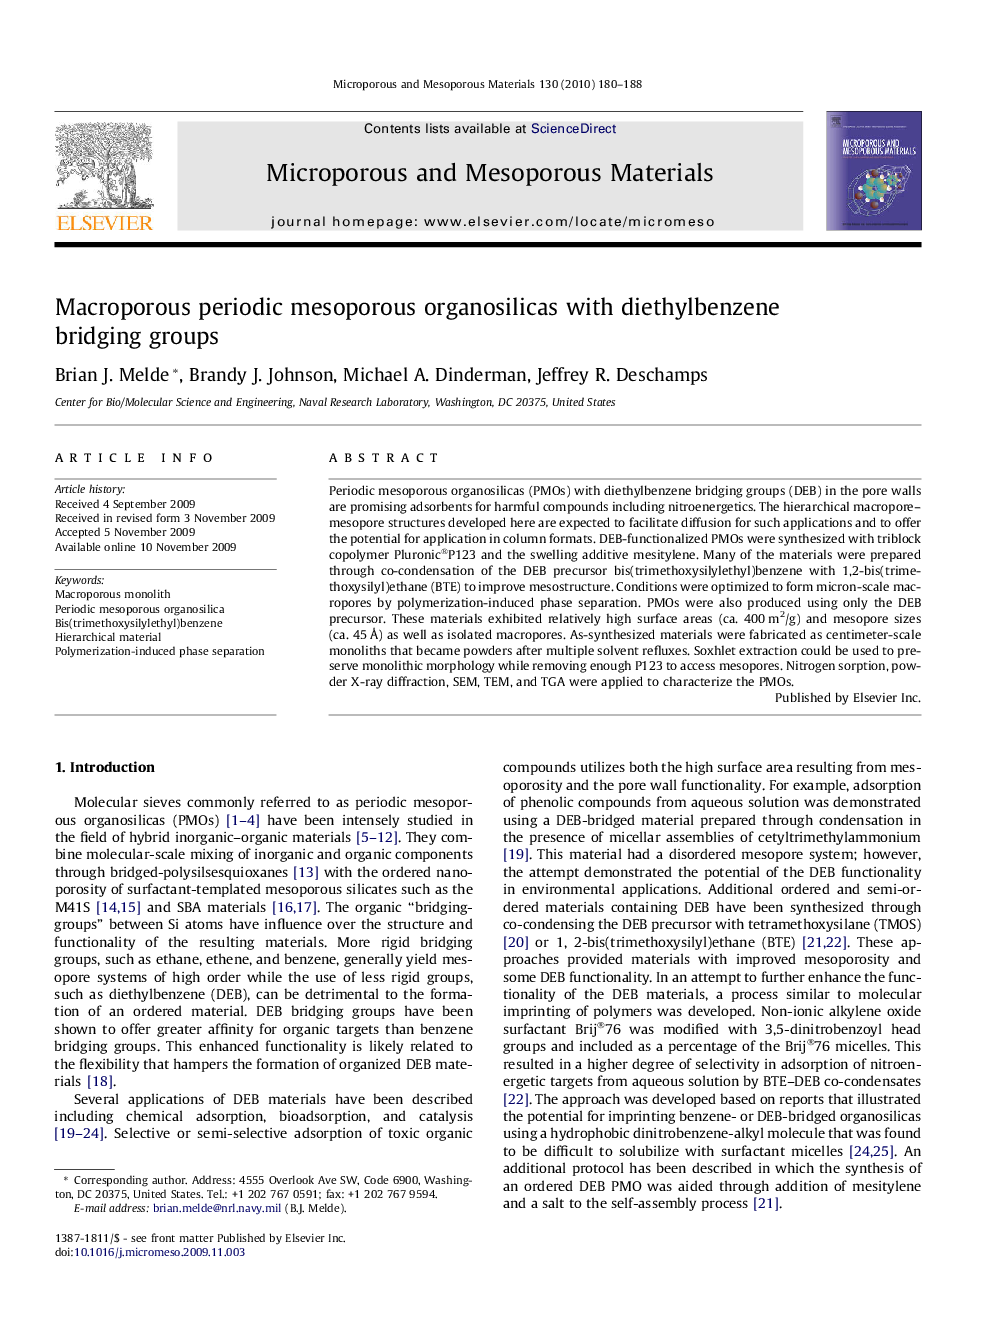 Macroporous periodic mesoporous organosilicas with diethylbenzene bridging groups